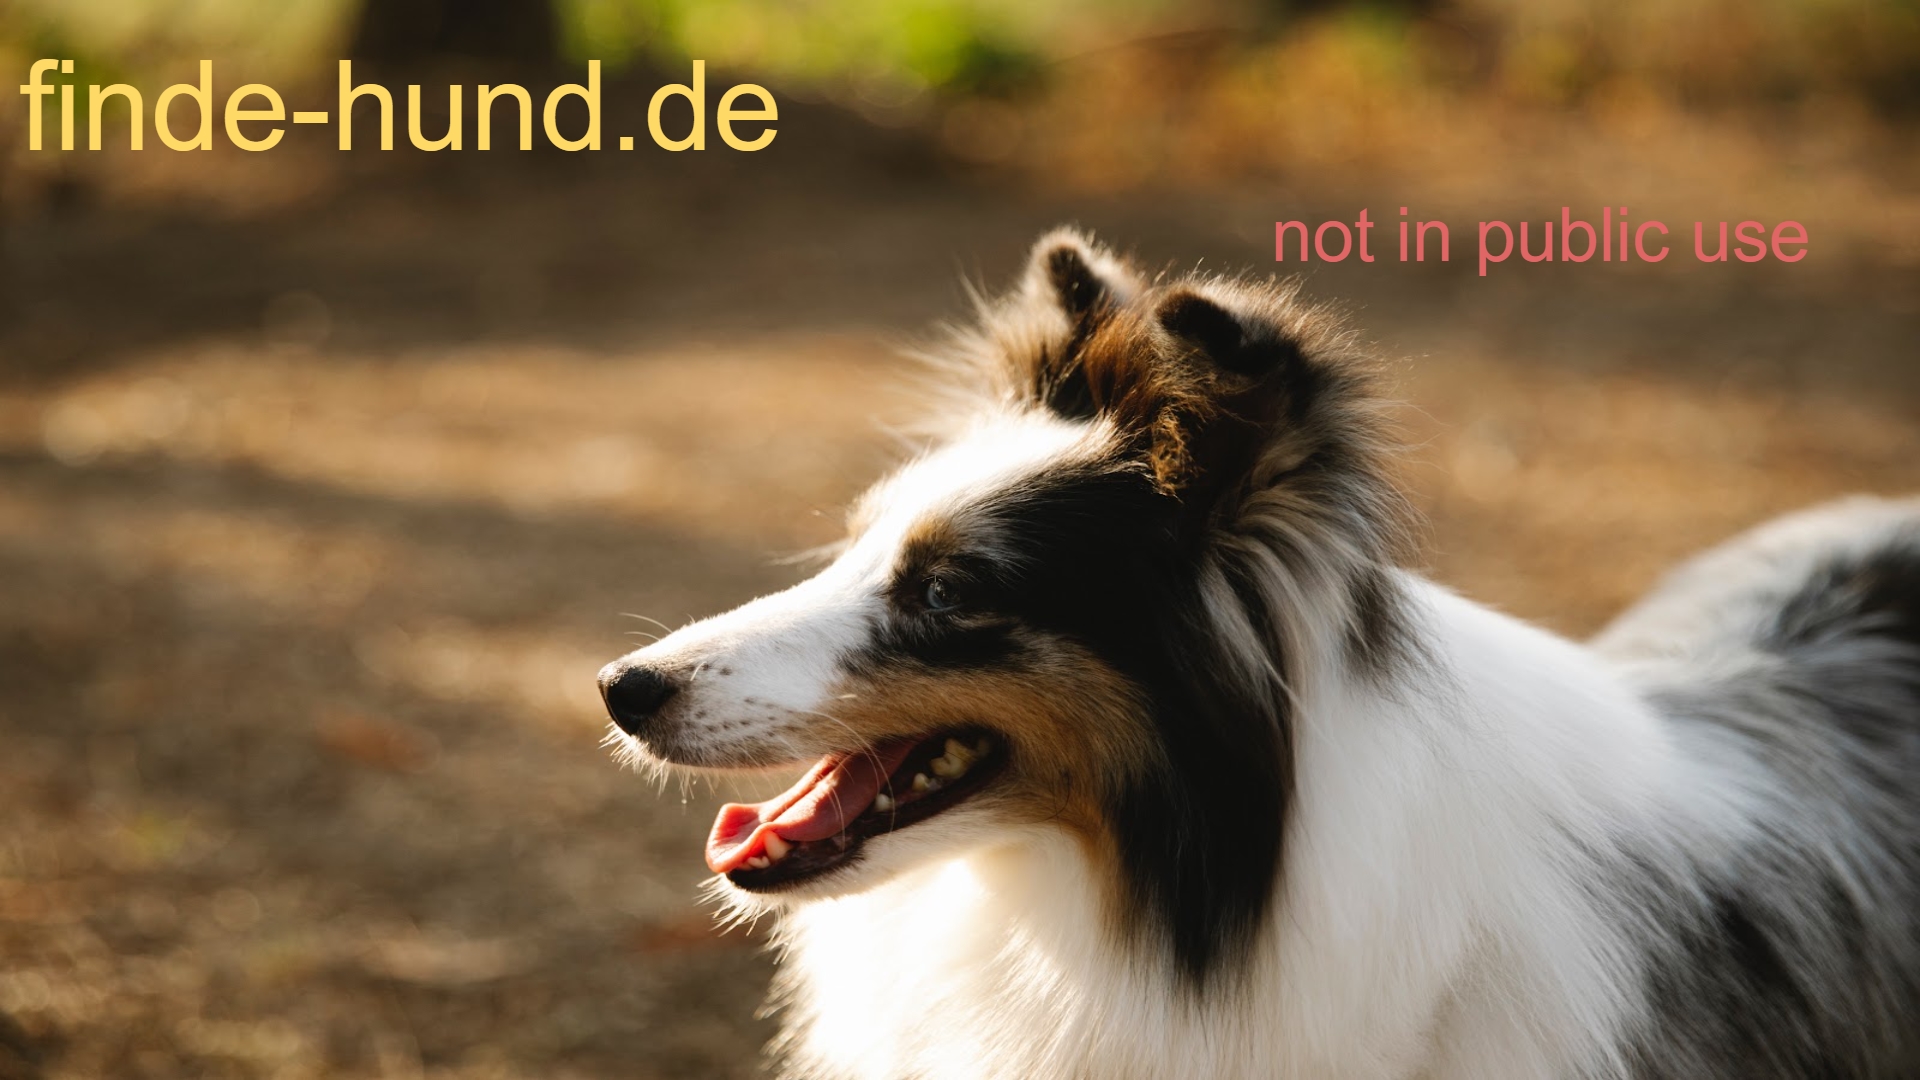 www.finde-hund.de